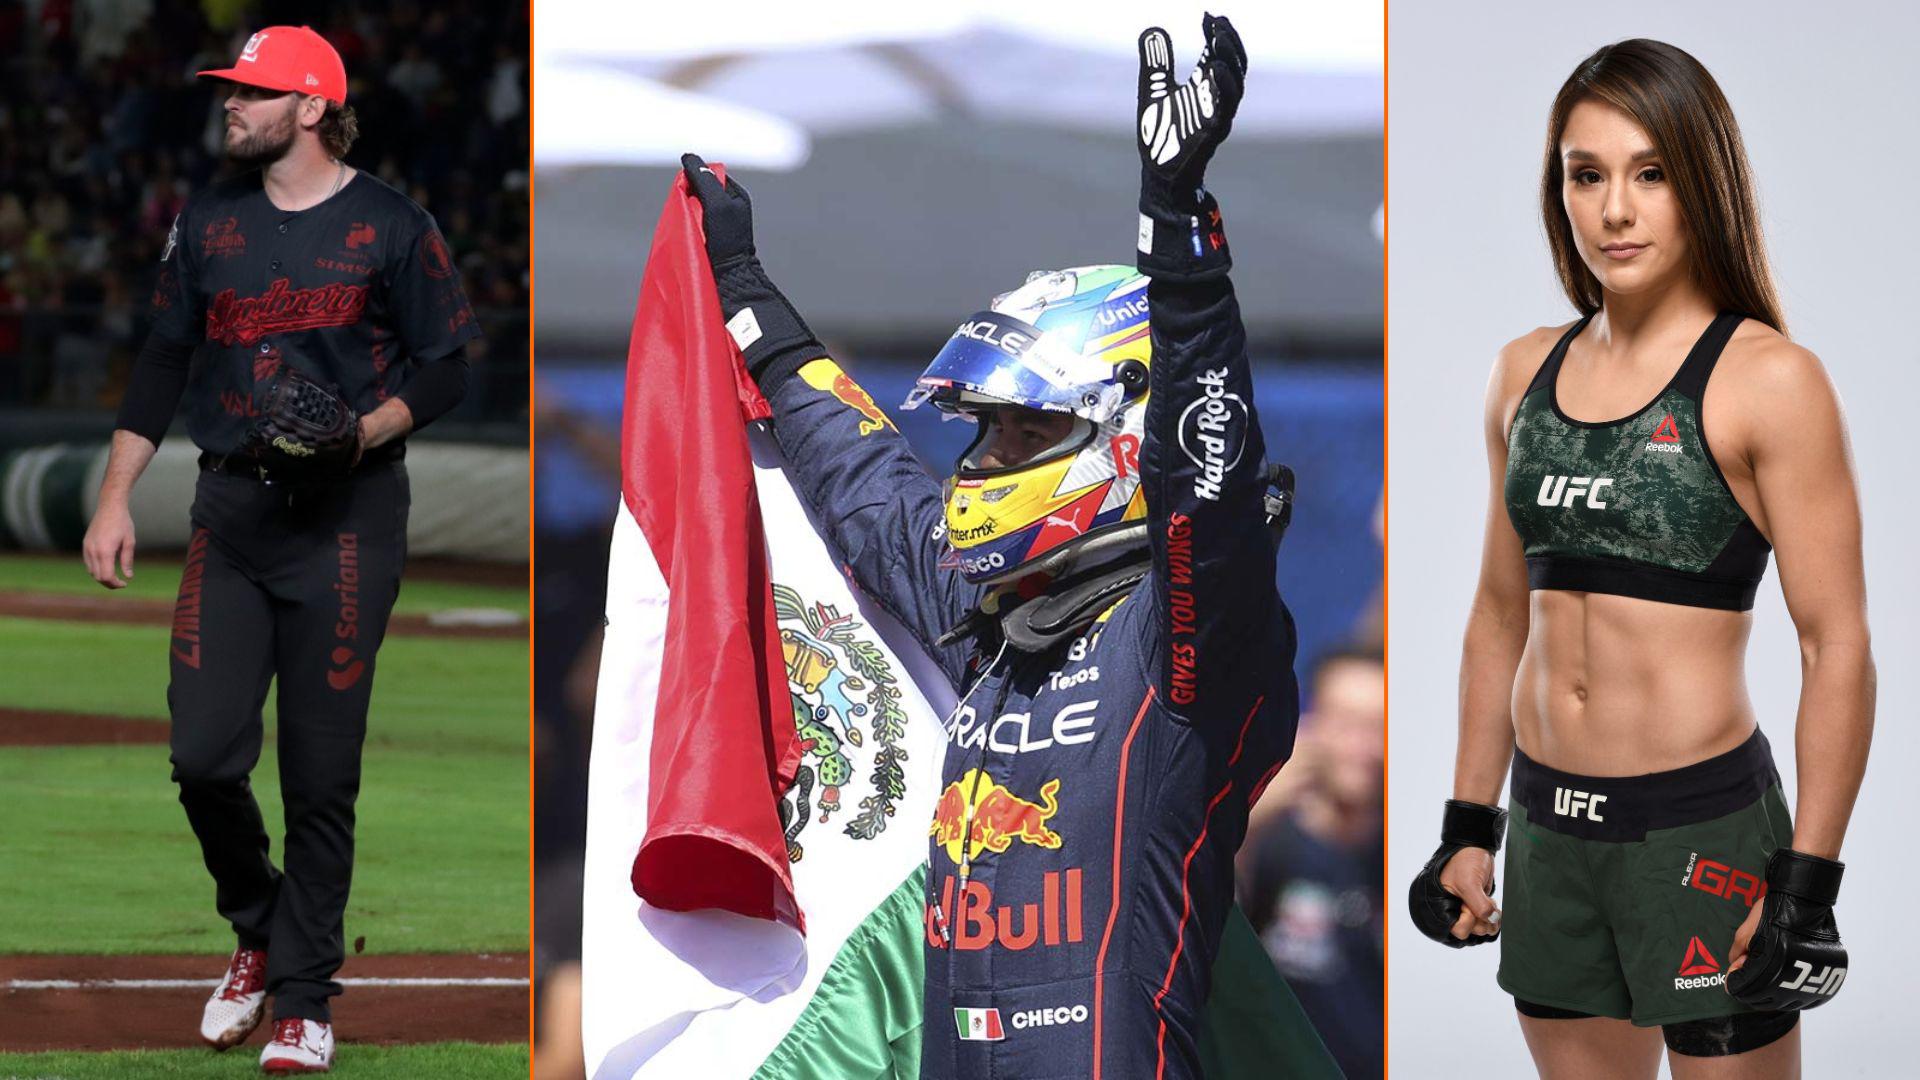 En fin de semana patriota, mexicanos ‘la rompen’ en todo el mundo: Alexa Grasso defenderá su título, mientras Checo Pérez busca el podio en Singapur. Noticias en tiempo real